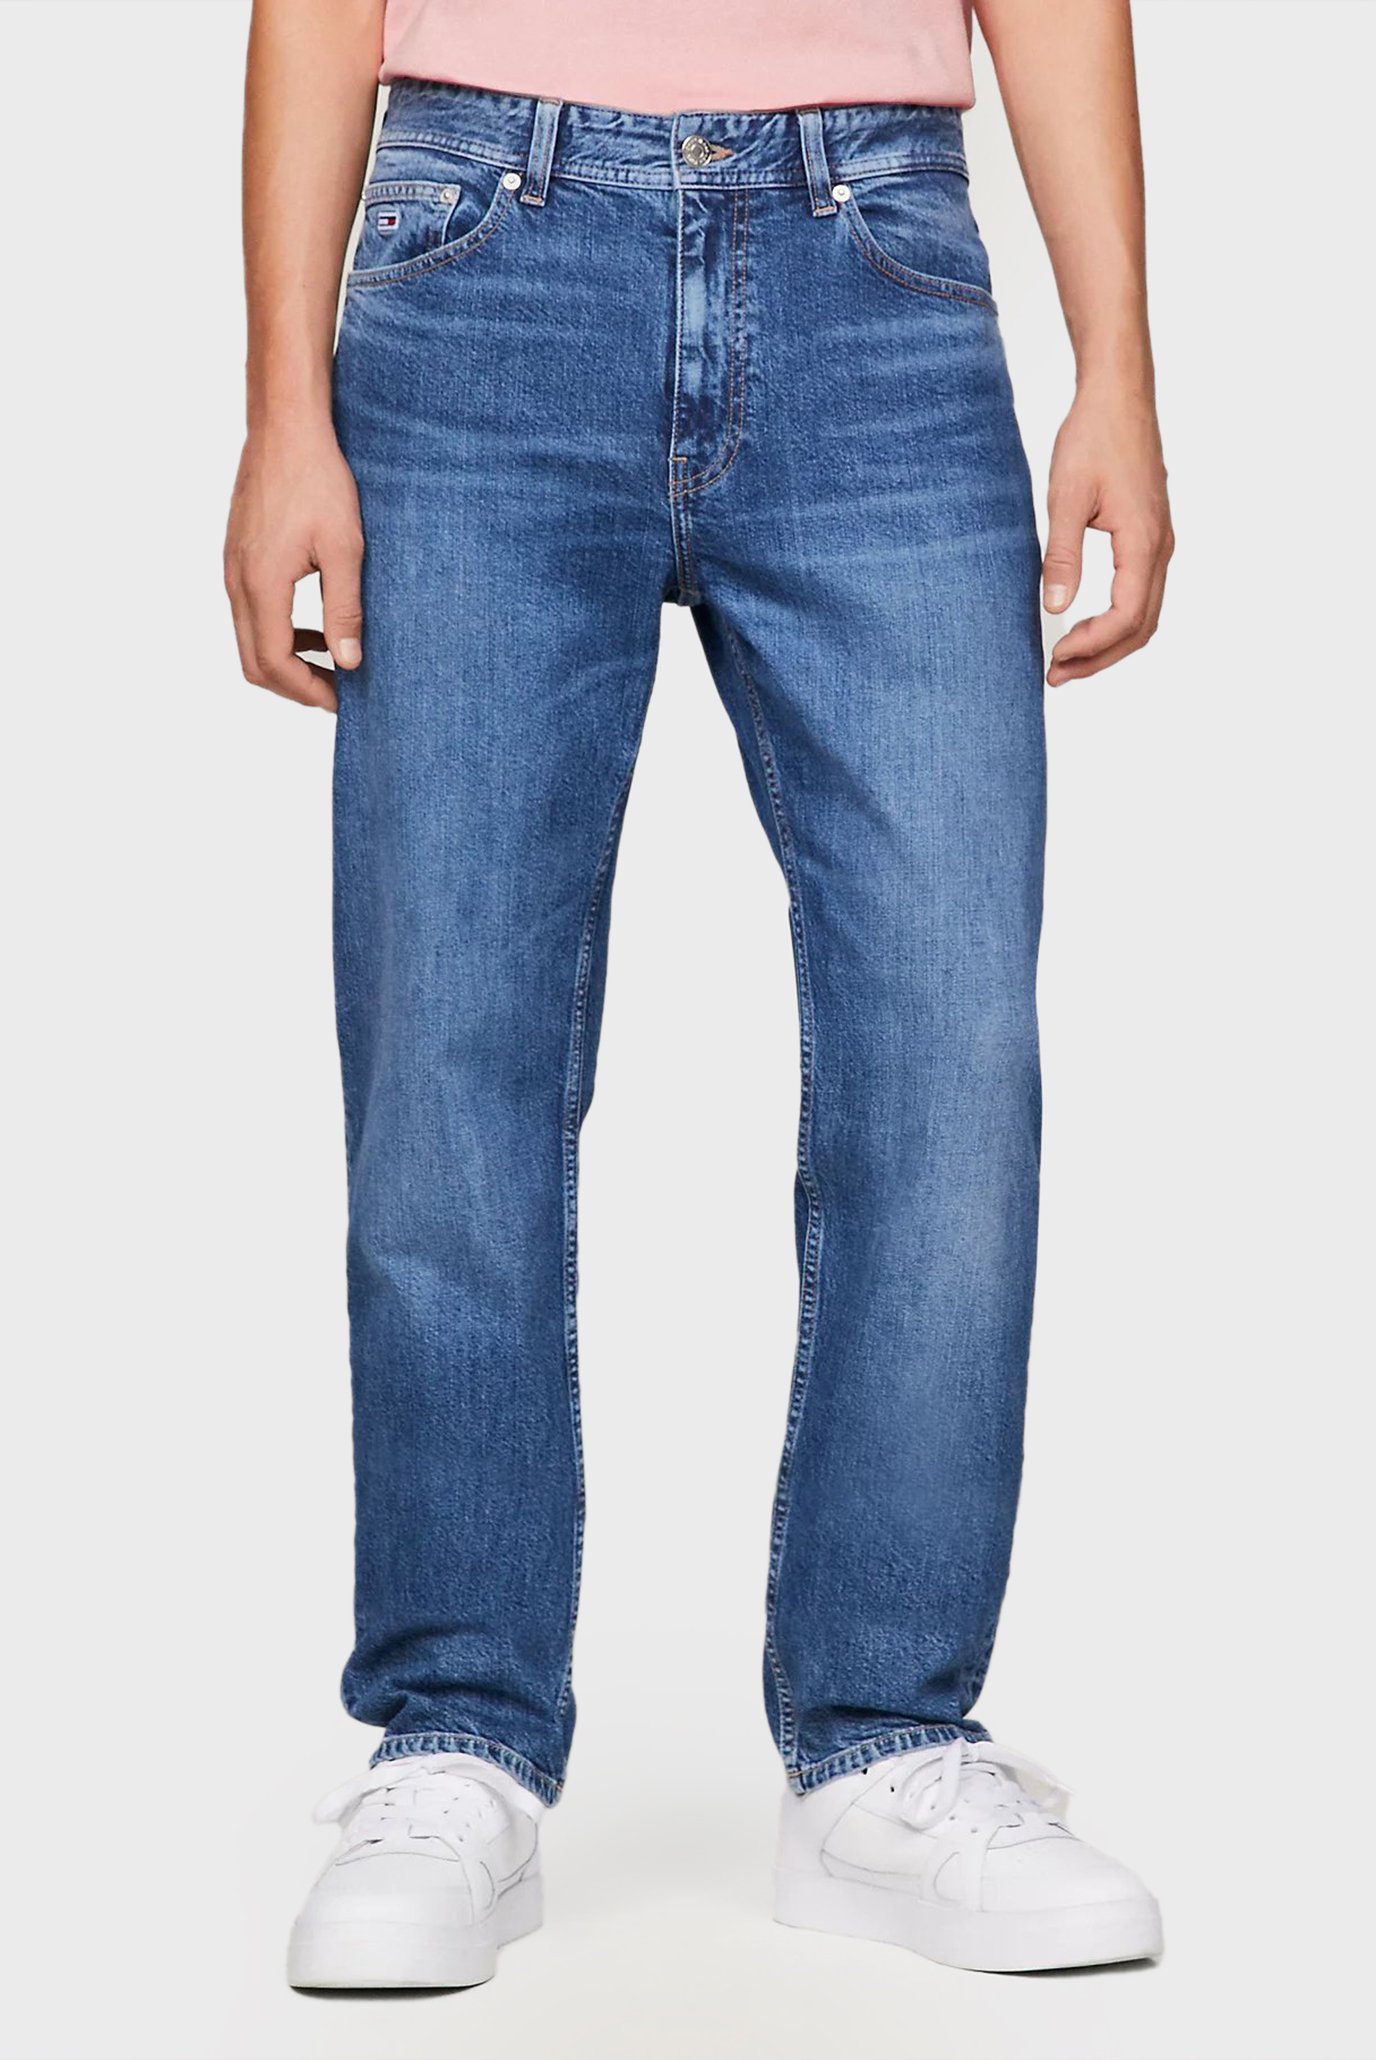 Чоловічі сині джинси ETHAN RLXD STRGHT 1